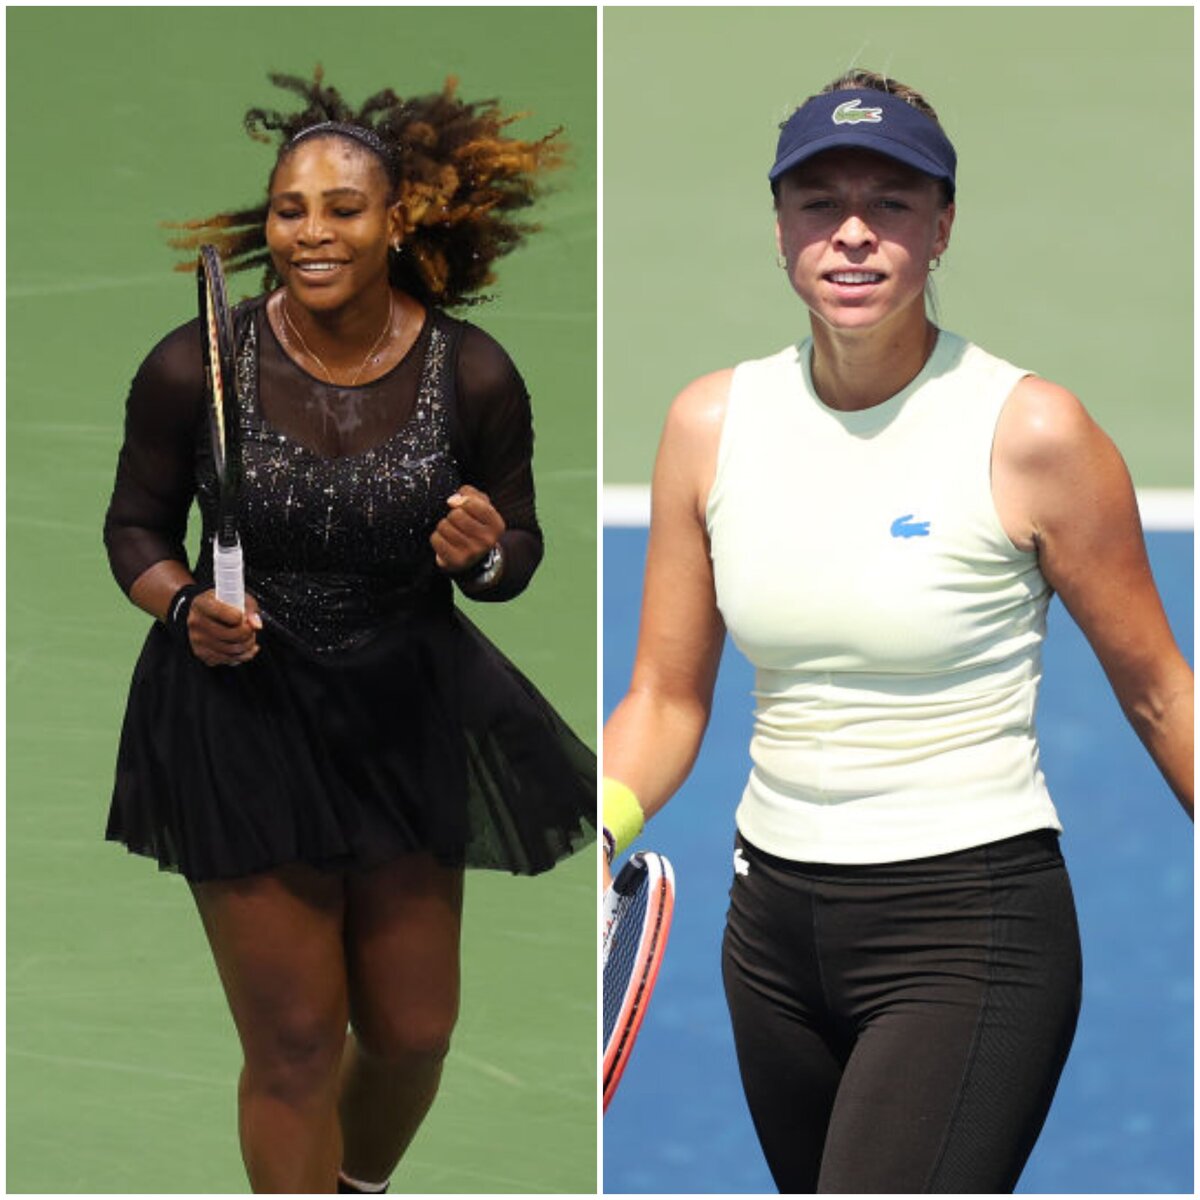 US Open 2022 live Serena Williams vs